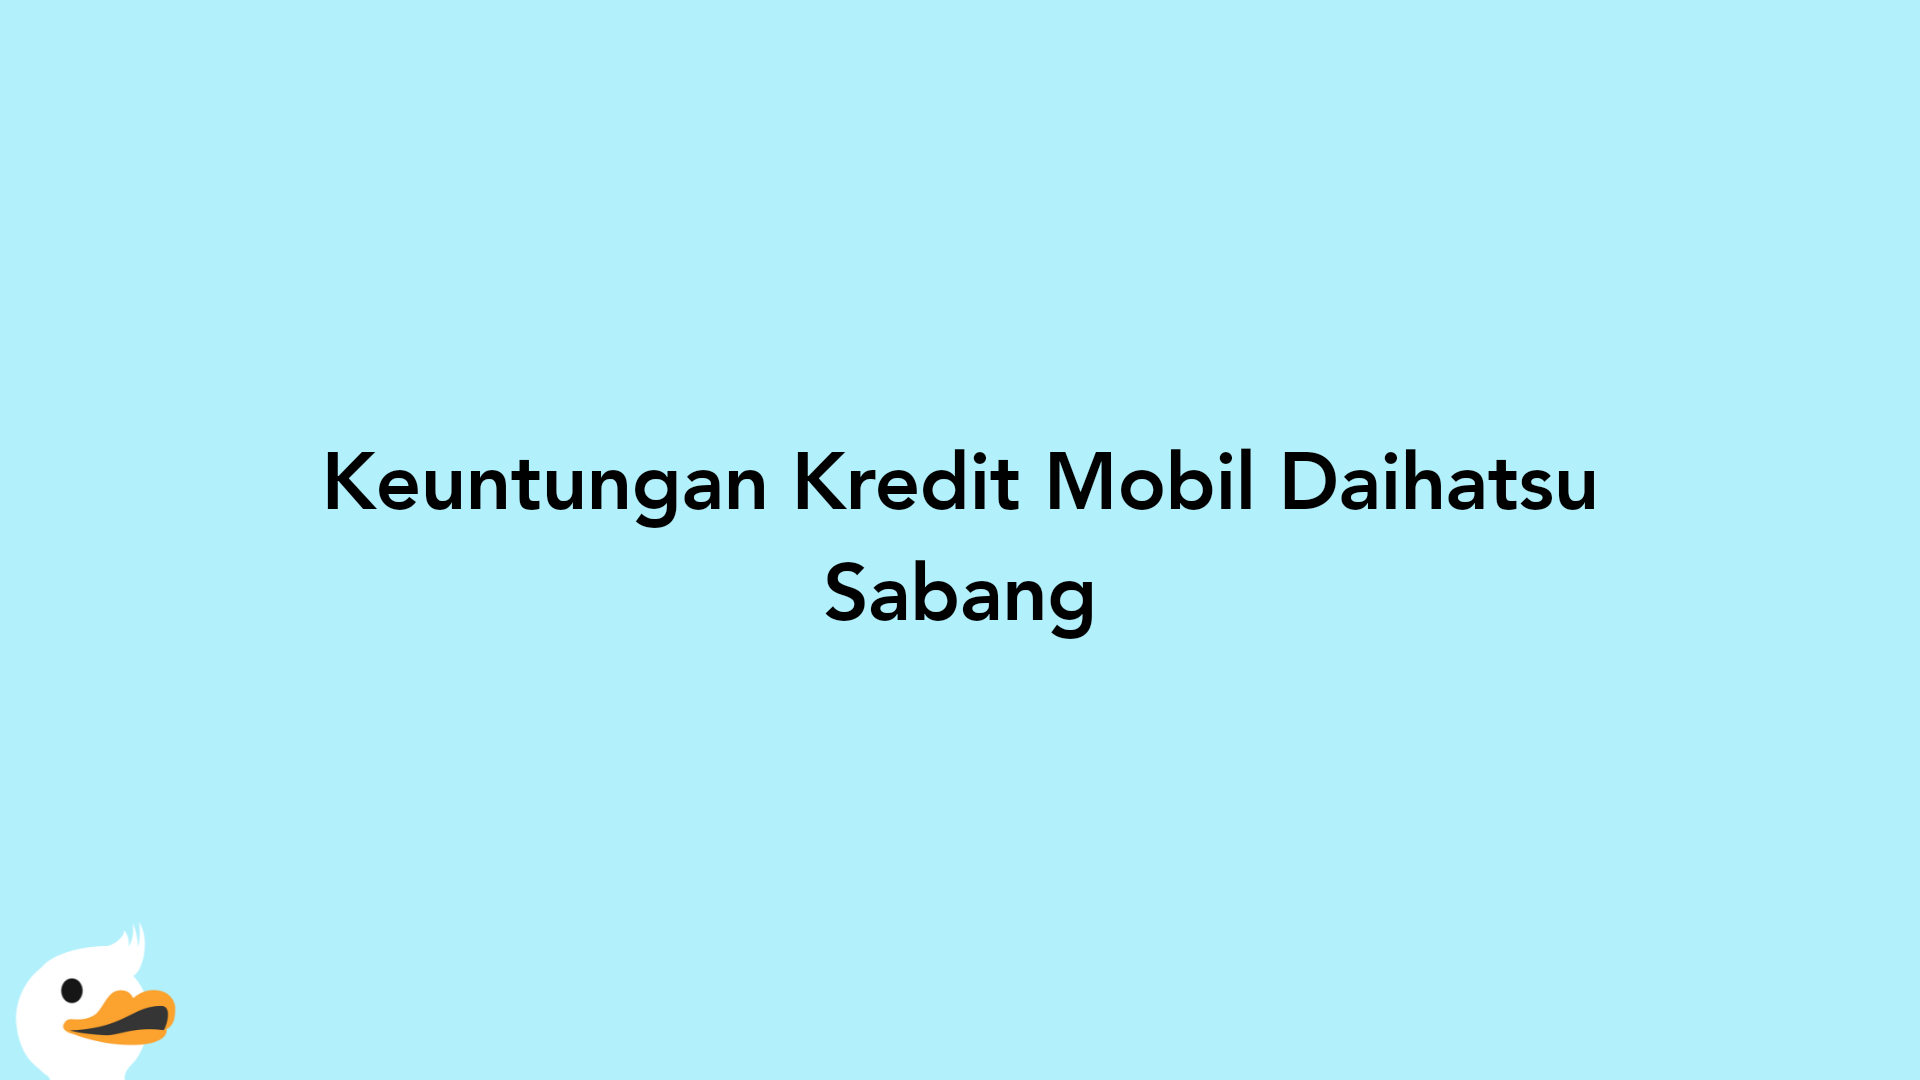 Keuntungan Kredit Mobil Daihatsu Sabang